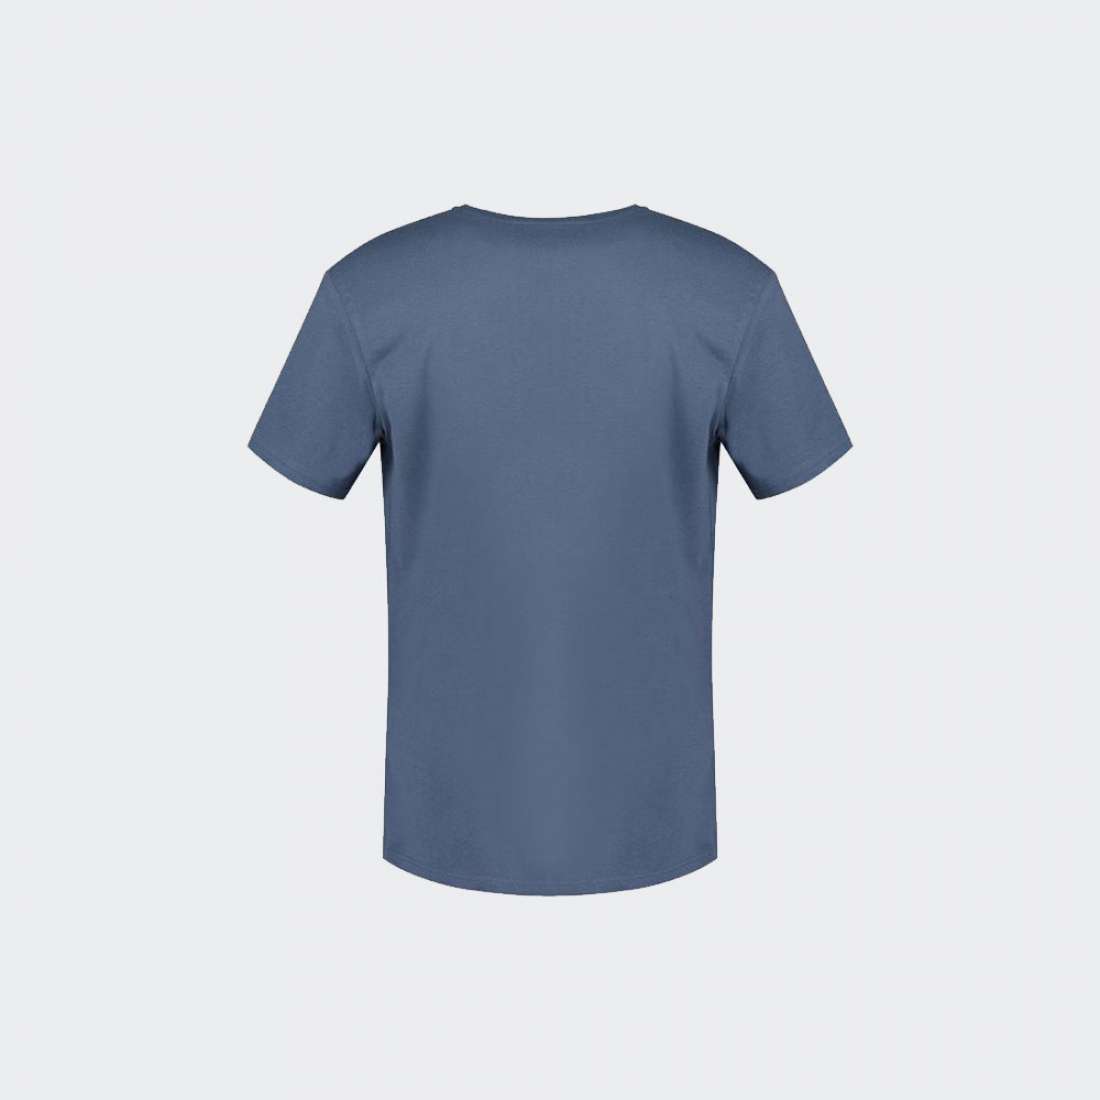 Grupo Lpoint® - Tshirt Blazer Trim Navy Circle Eqyzt07503-bvj0 Quiksilver